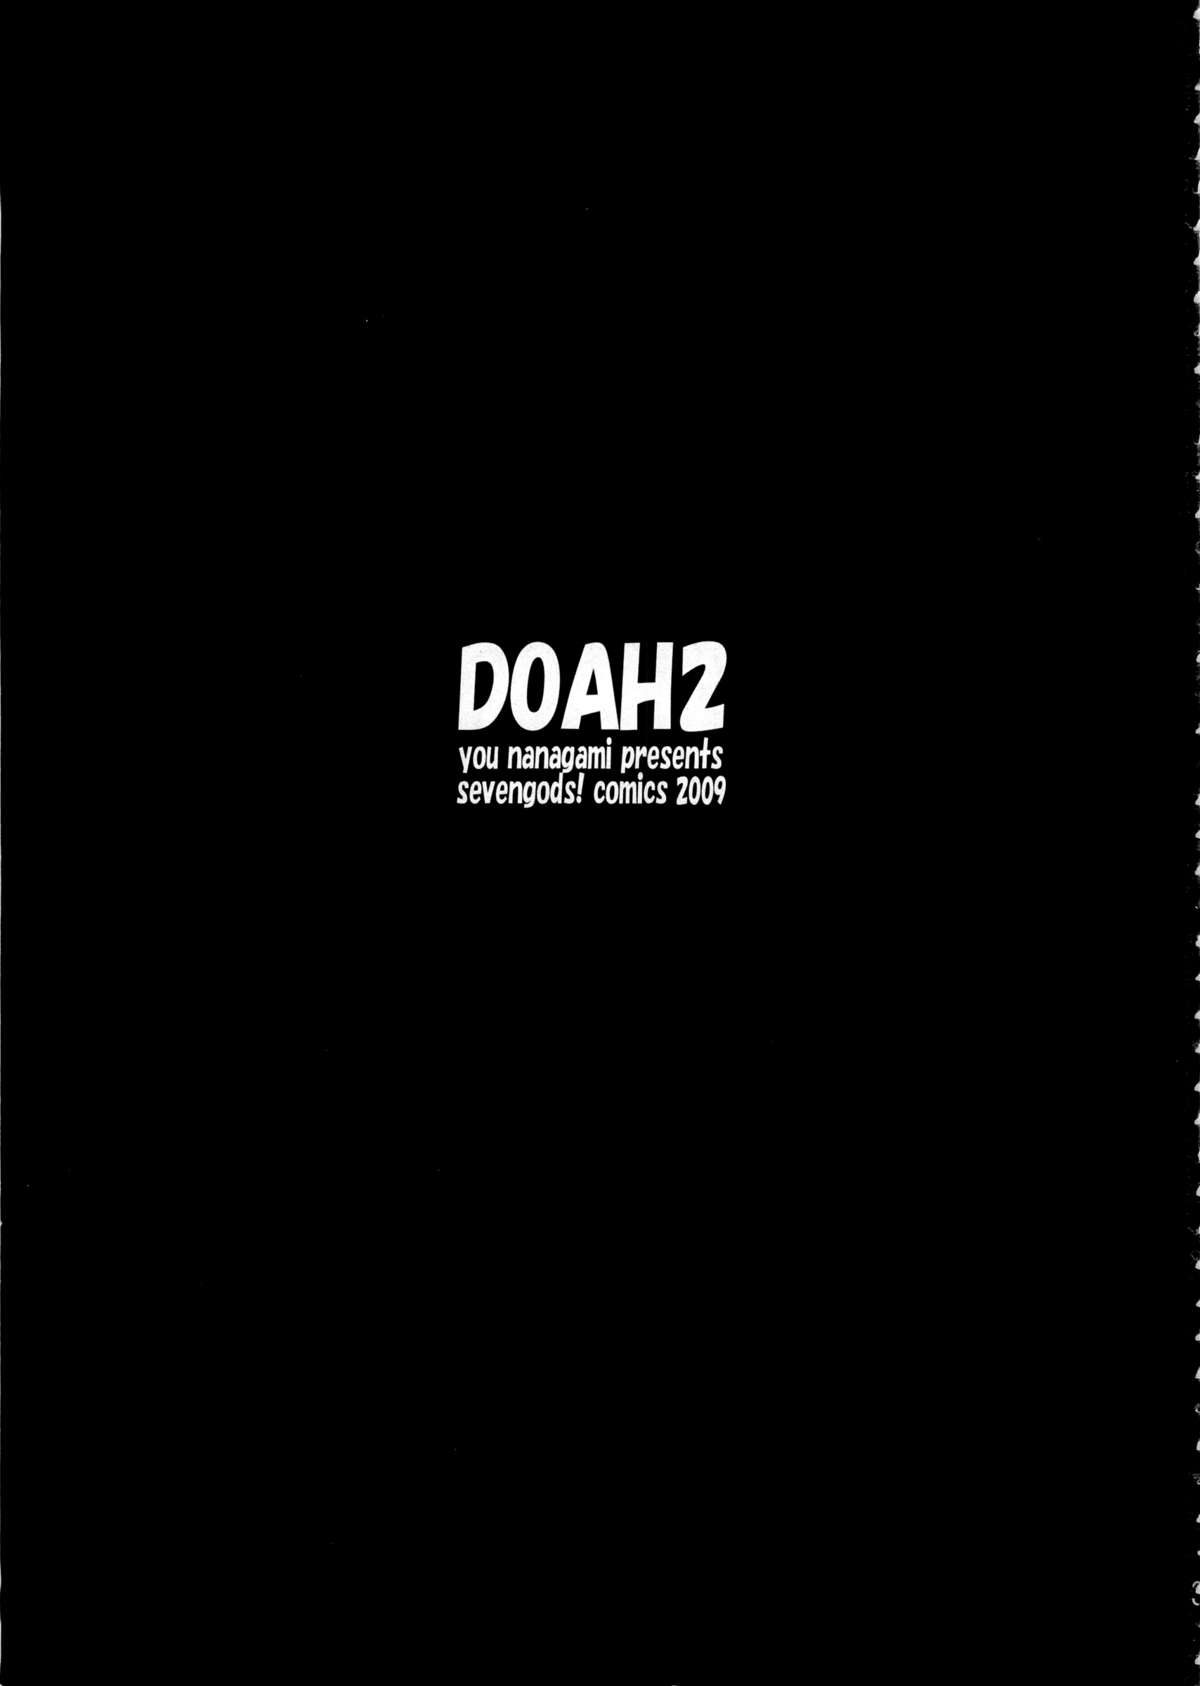 DOAH 2